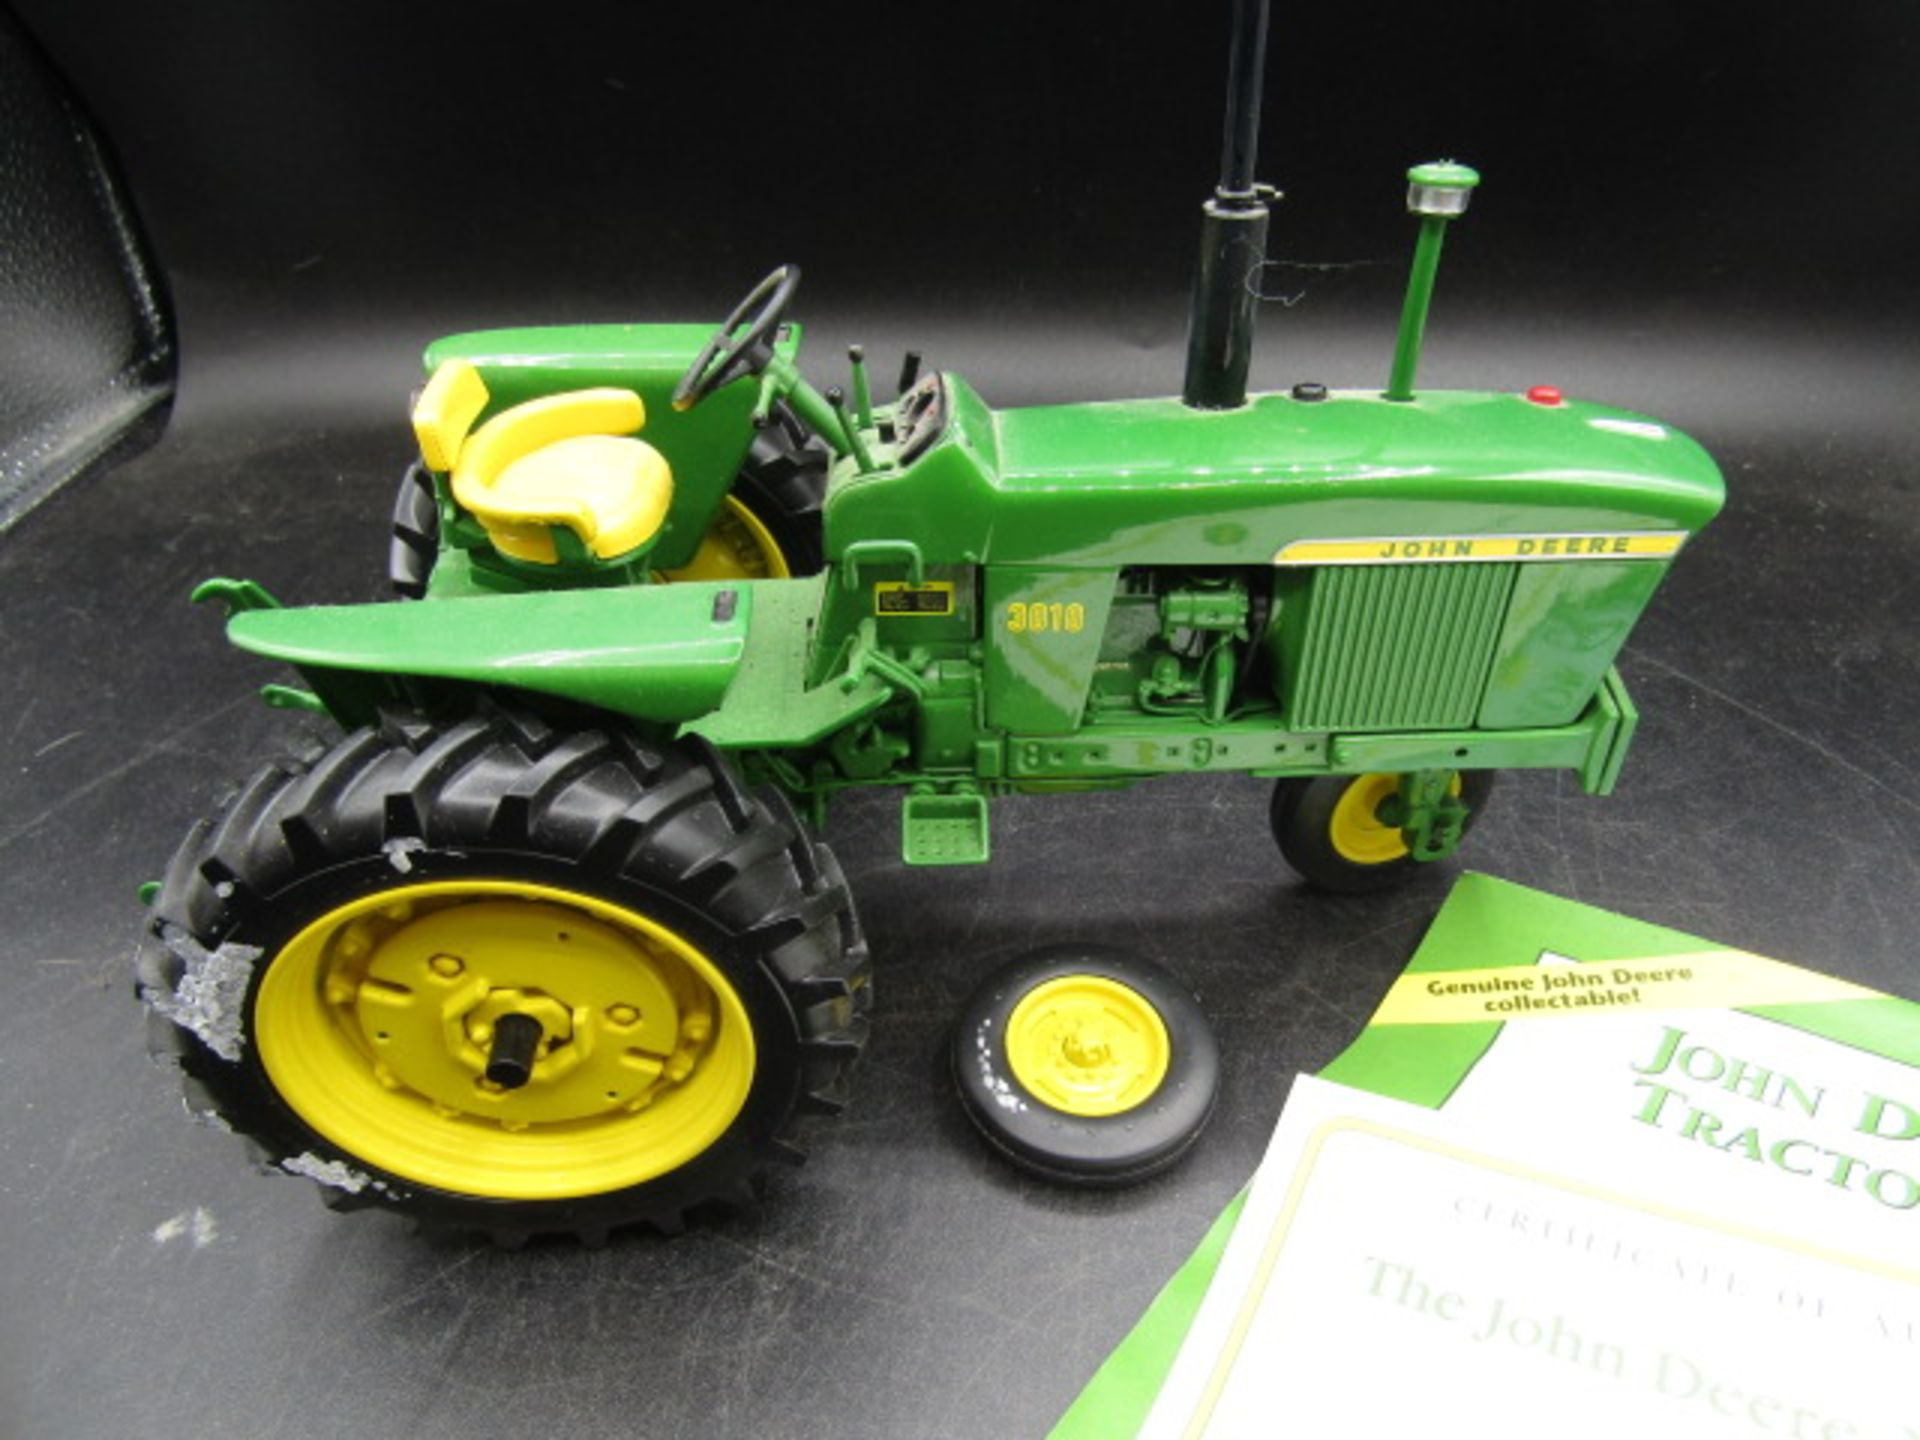 Danbury Mint John Deere model tractor with certs and box one wheel has broken off